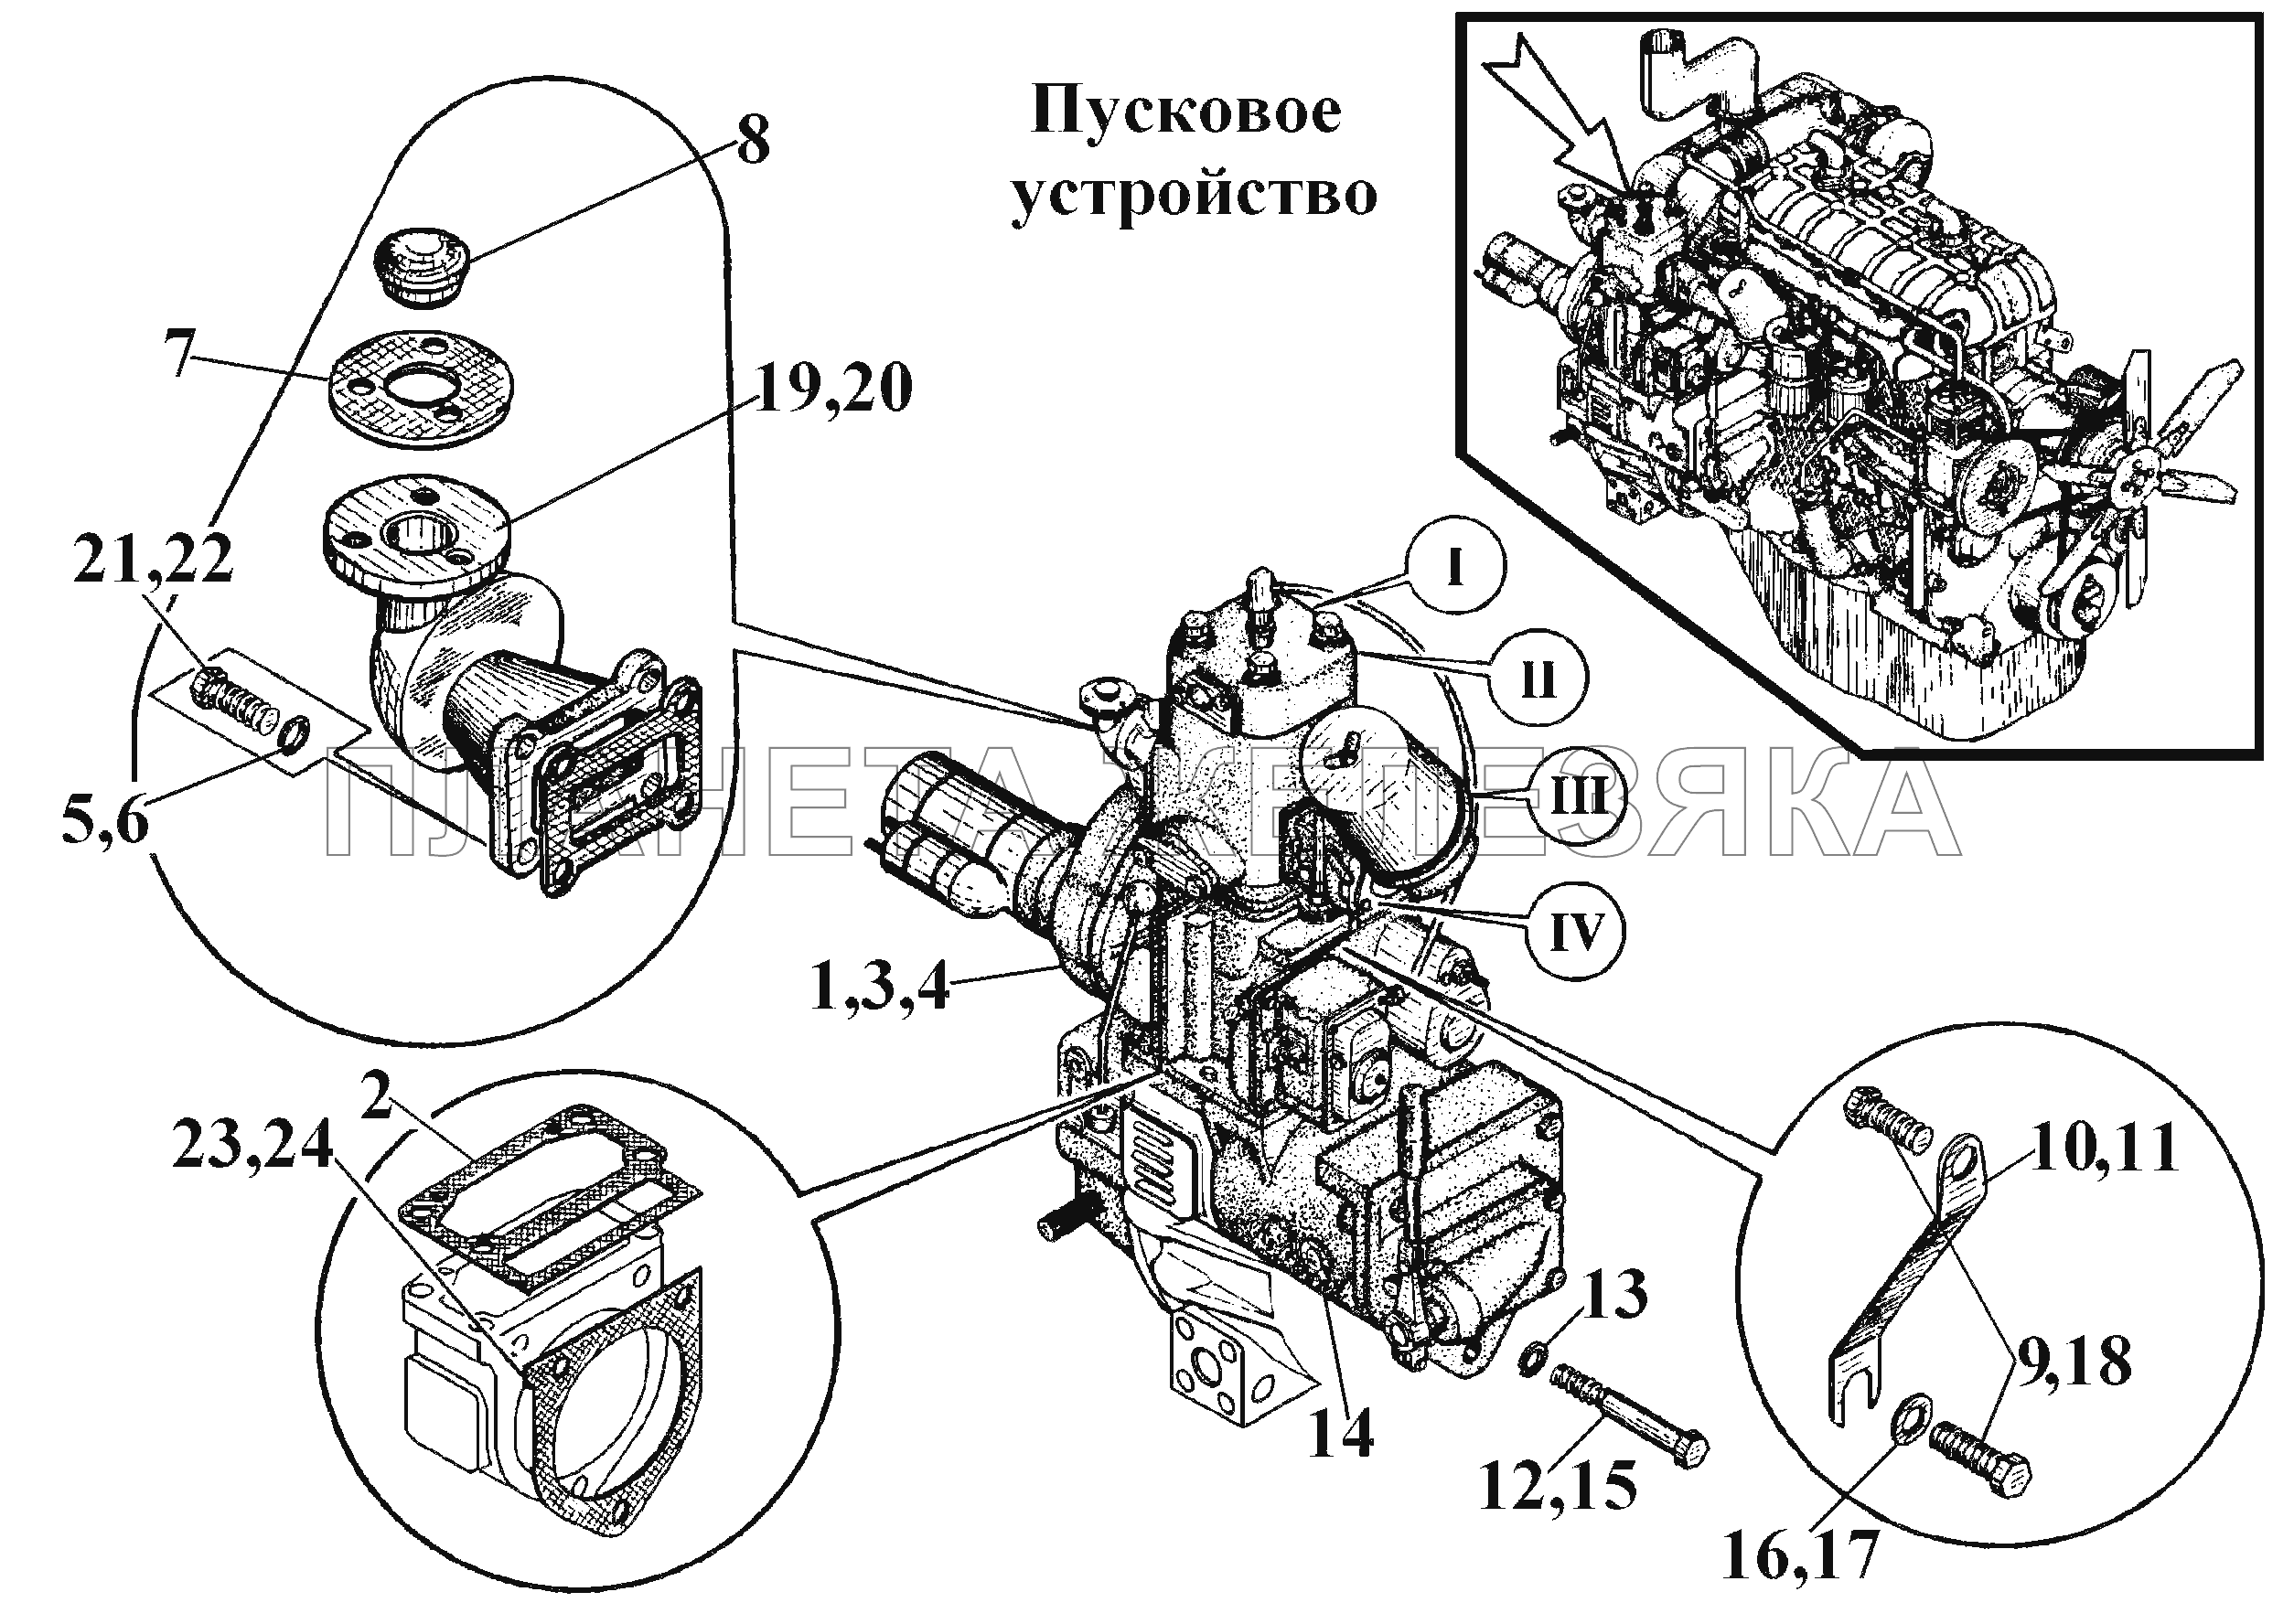 Пусковое устройство (1) ВТ-100Д